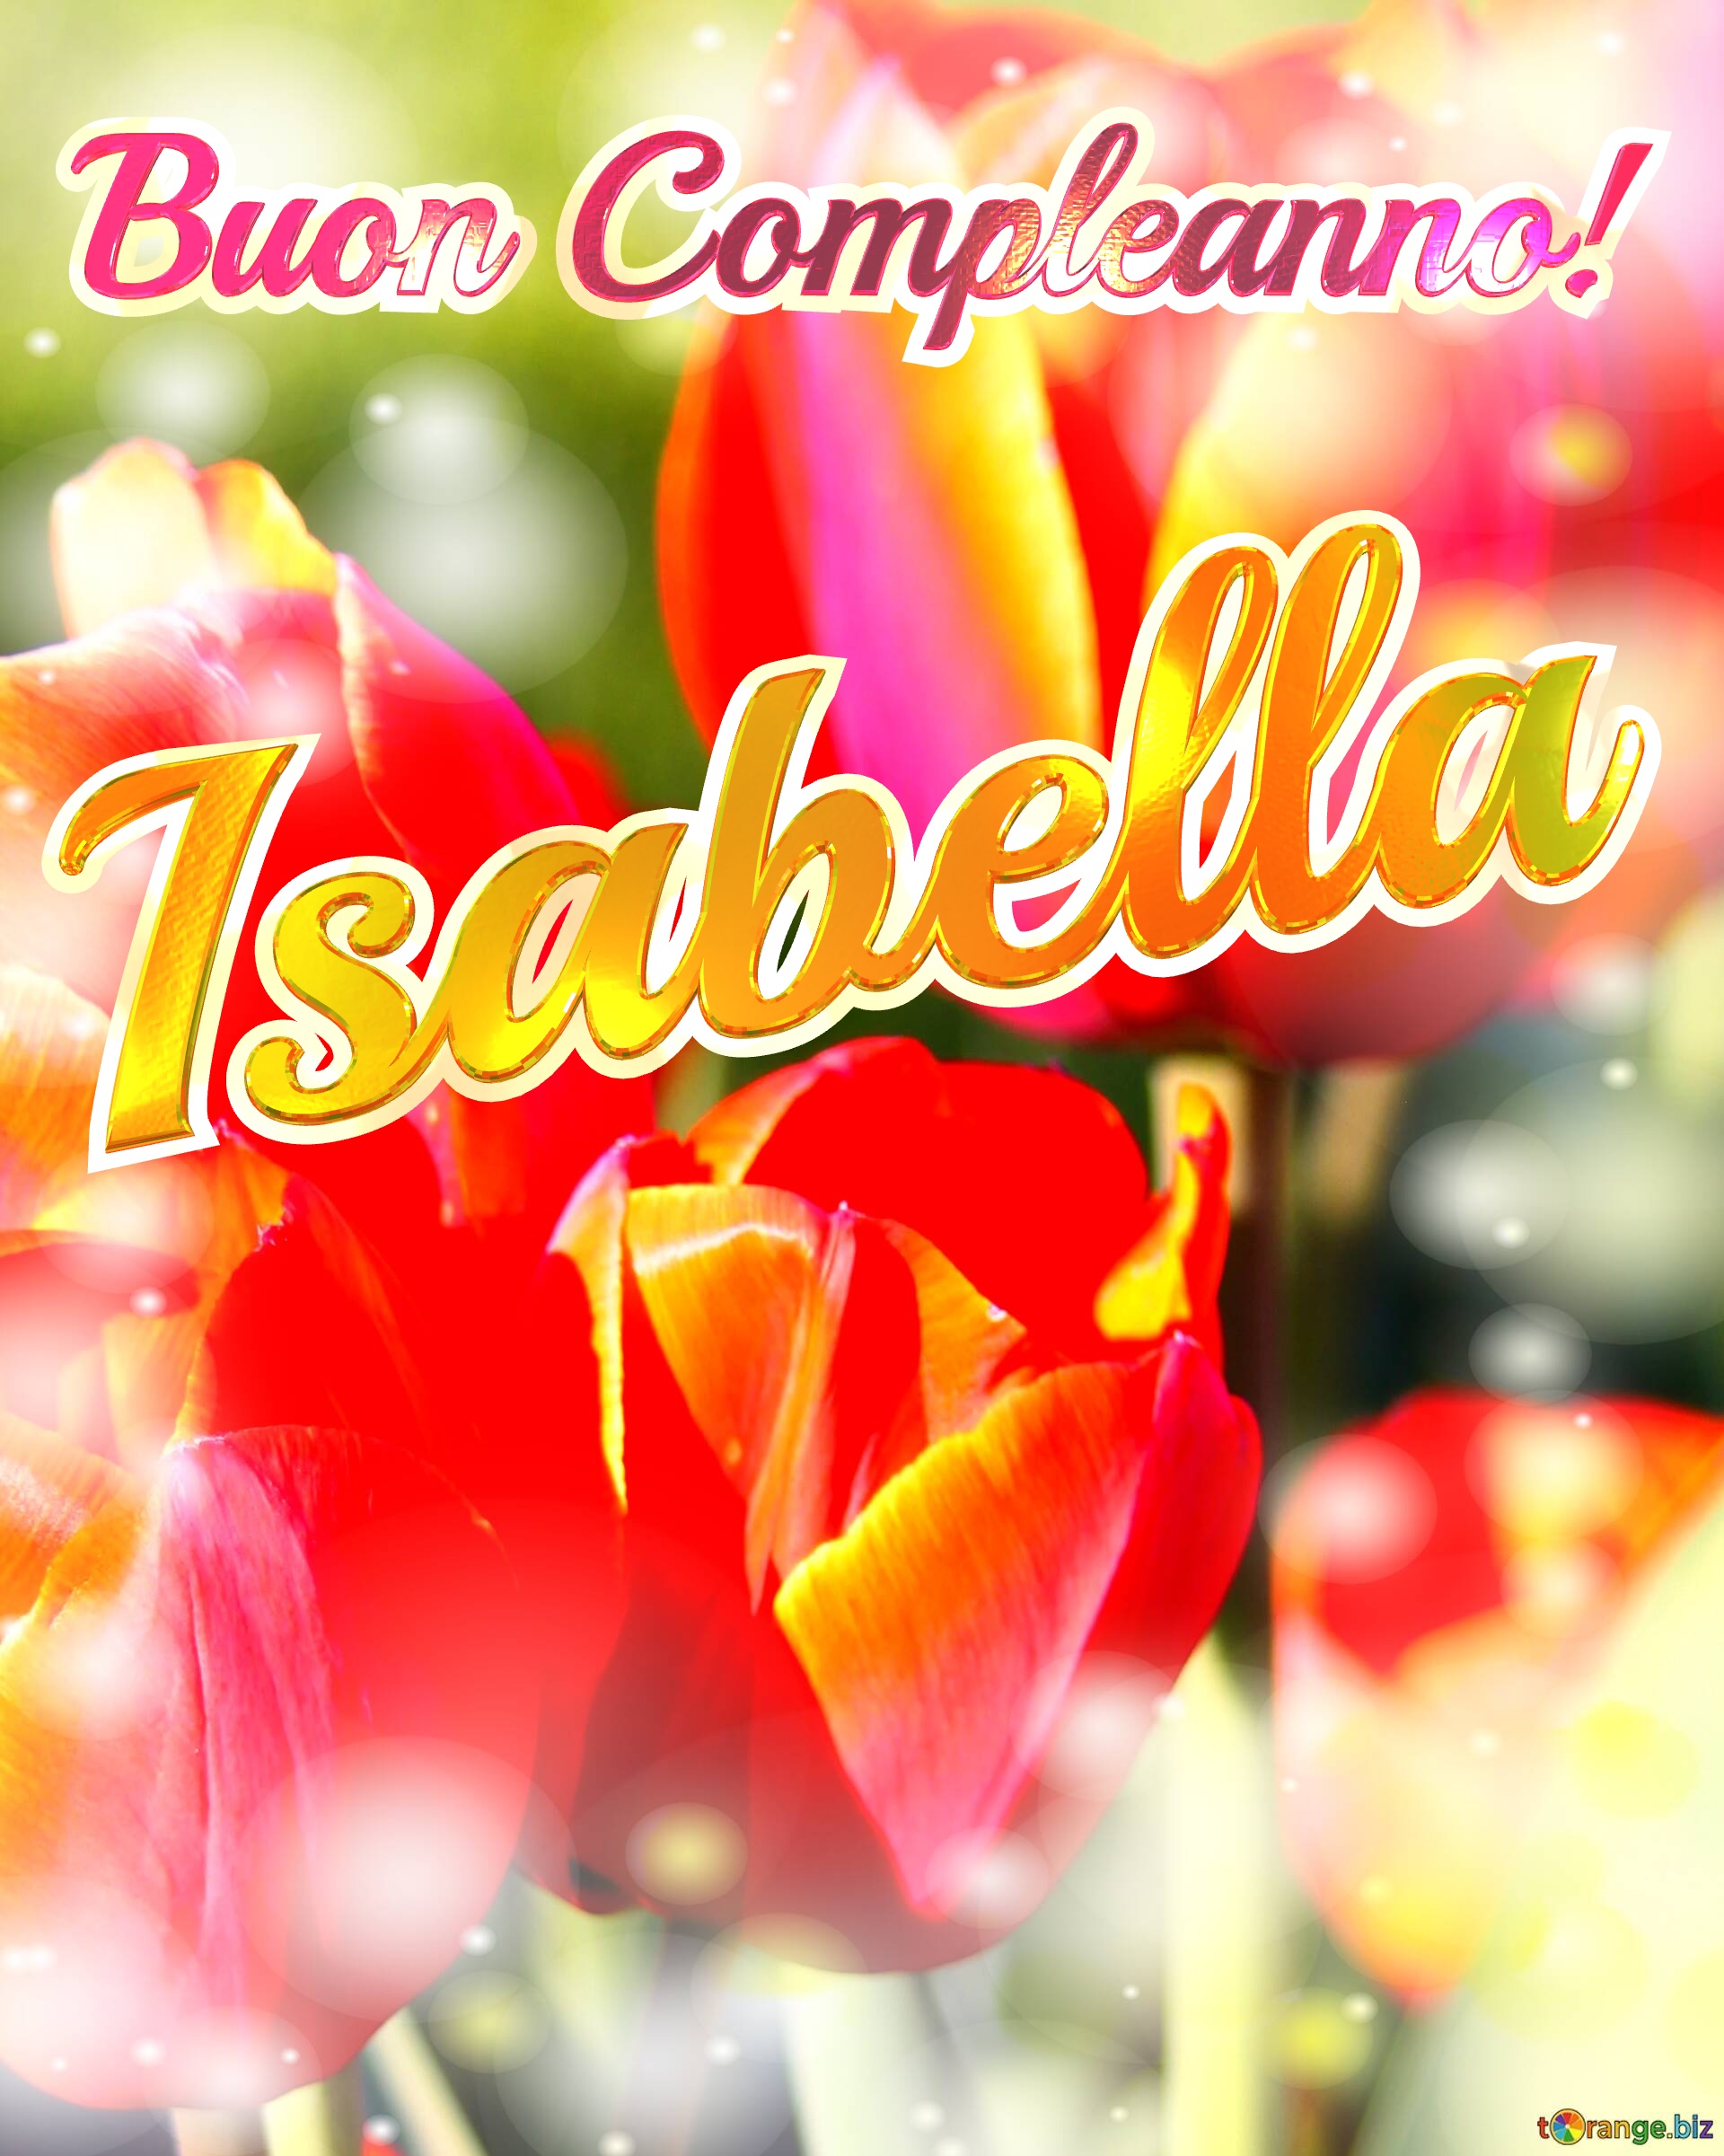 Buon Compleanno! Isabella  La bellezza dei tulipani è un richiamo alla bellezza della vita, auguri per una vita piena di bellezza e soddisfazione. №0